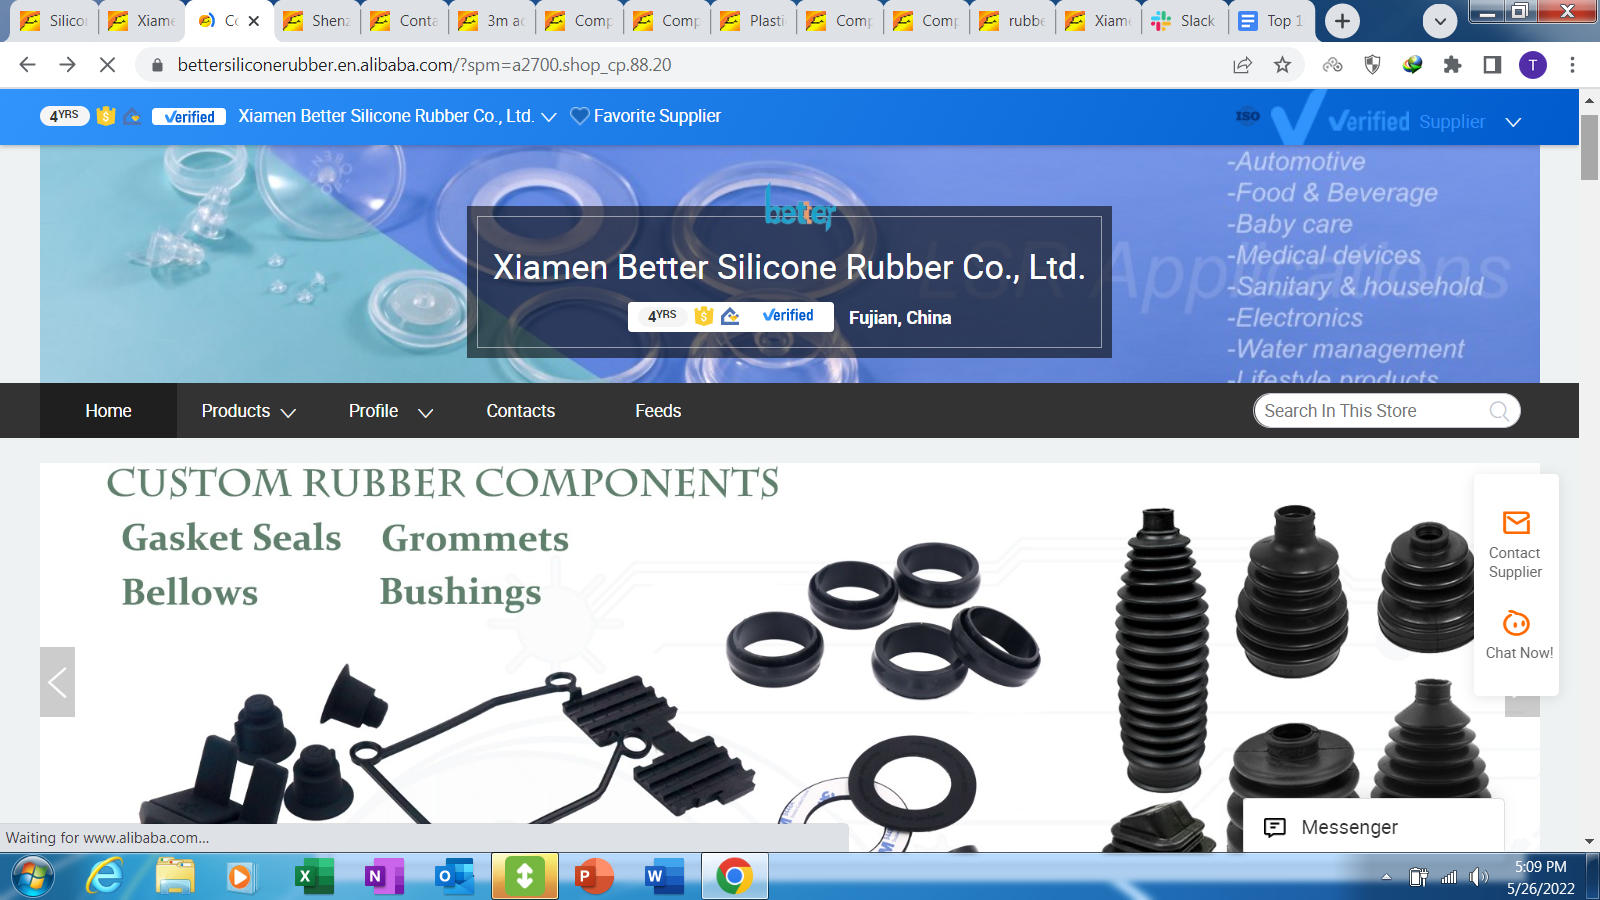 Better Silicone Rubber Co., Ltd